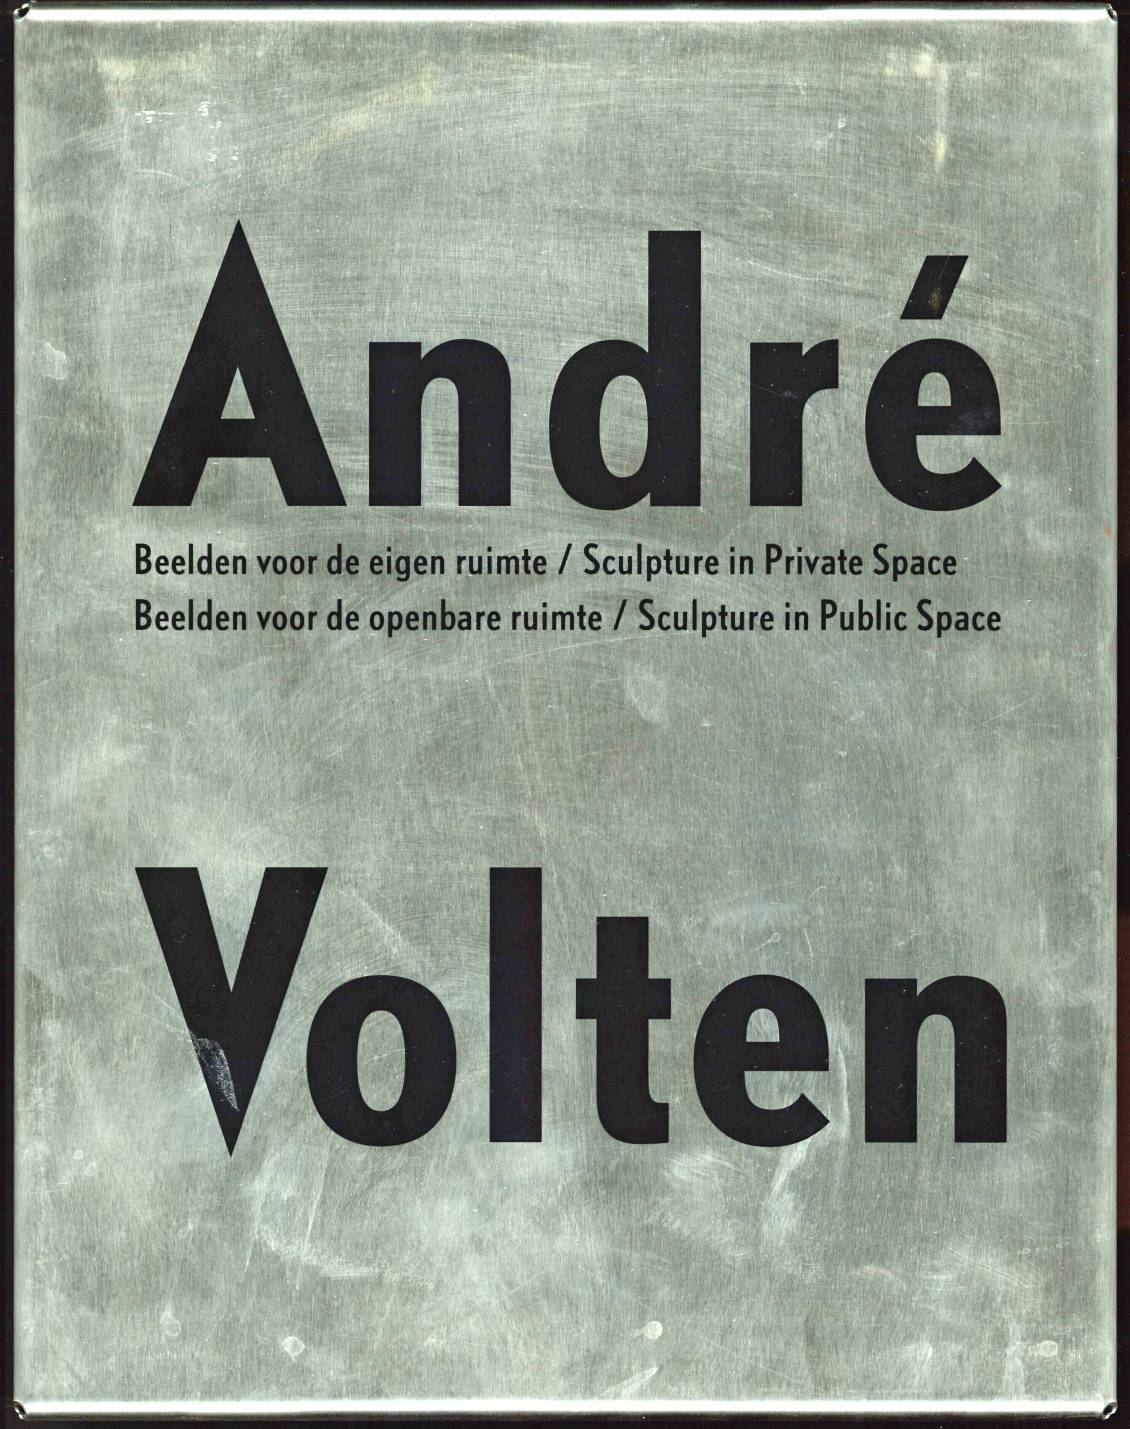 André Volten; Beelden voor de eigen ruimte/Beelden voor de openbare ruimte, 2000